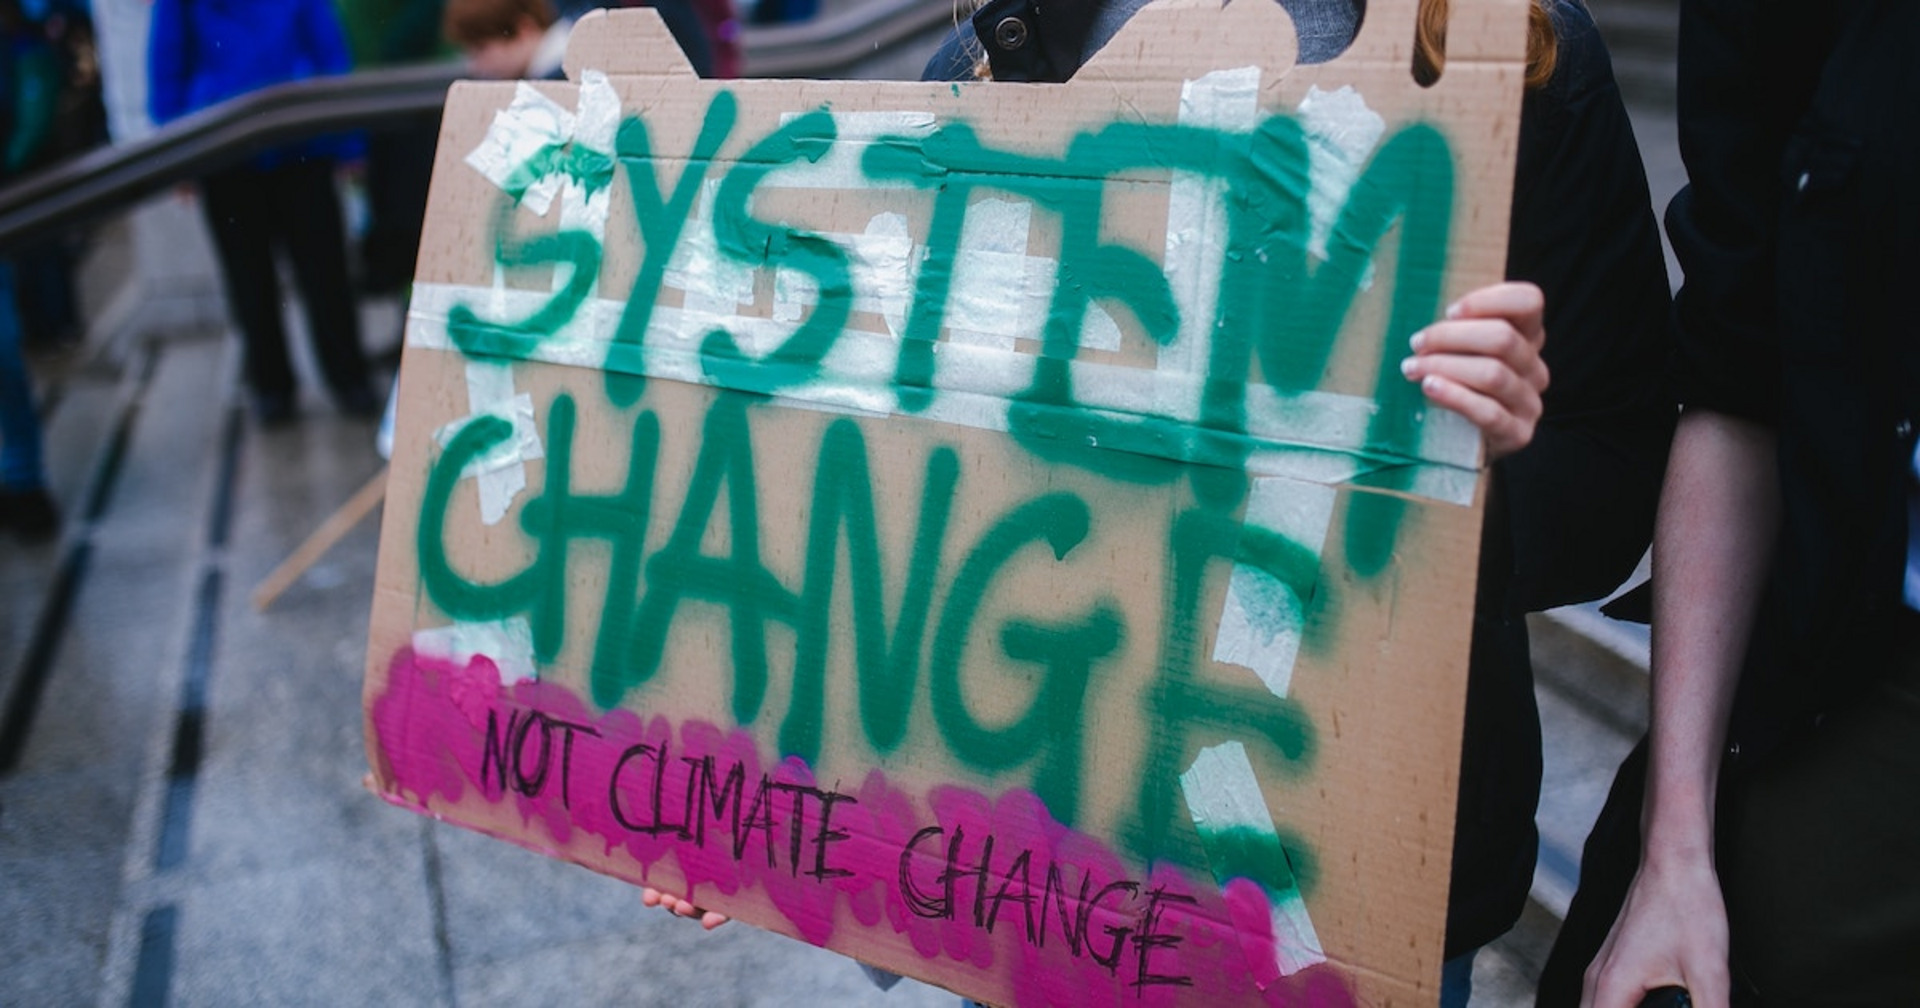 Eine Person hält ein Schild mit dem Text "System change, not climate change"